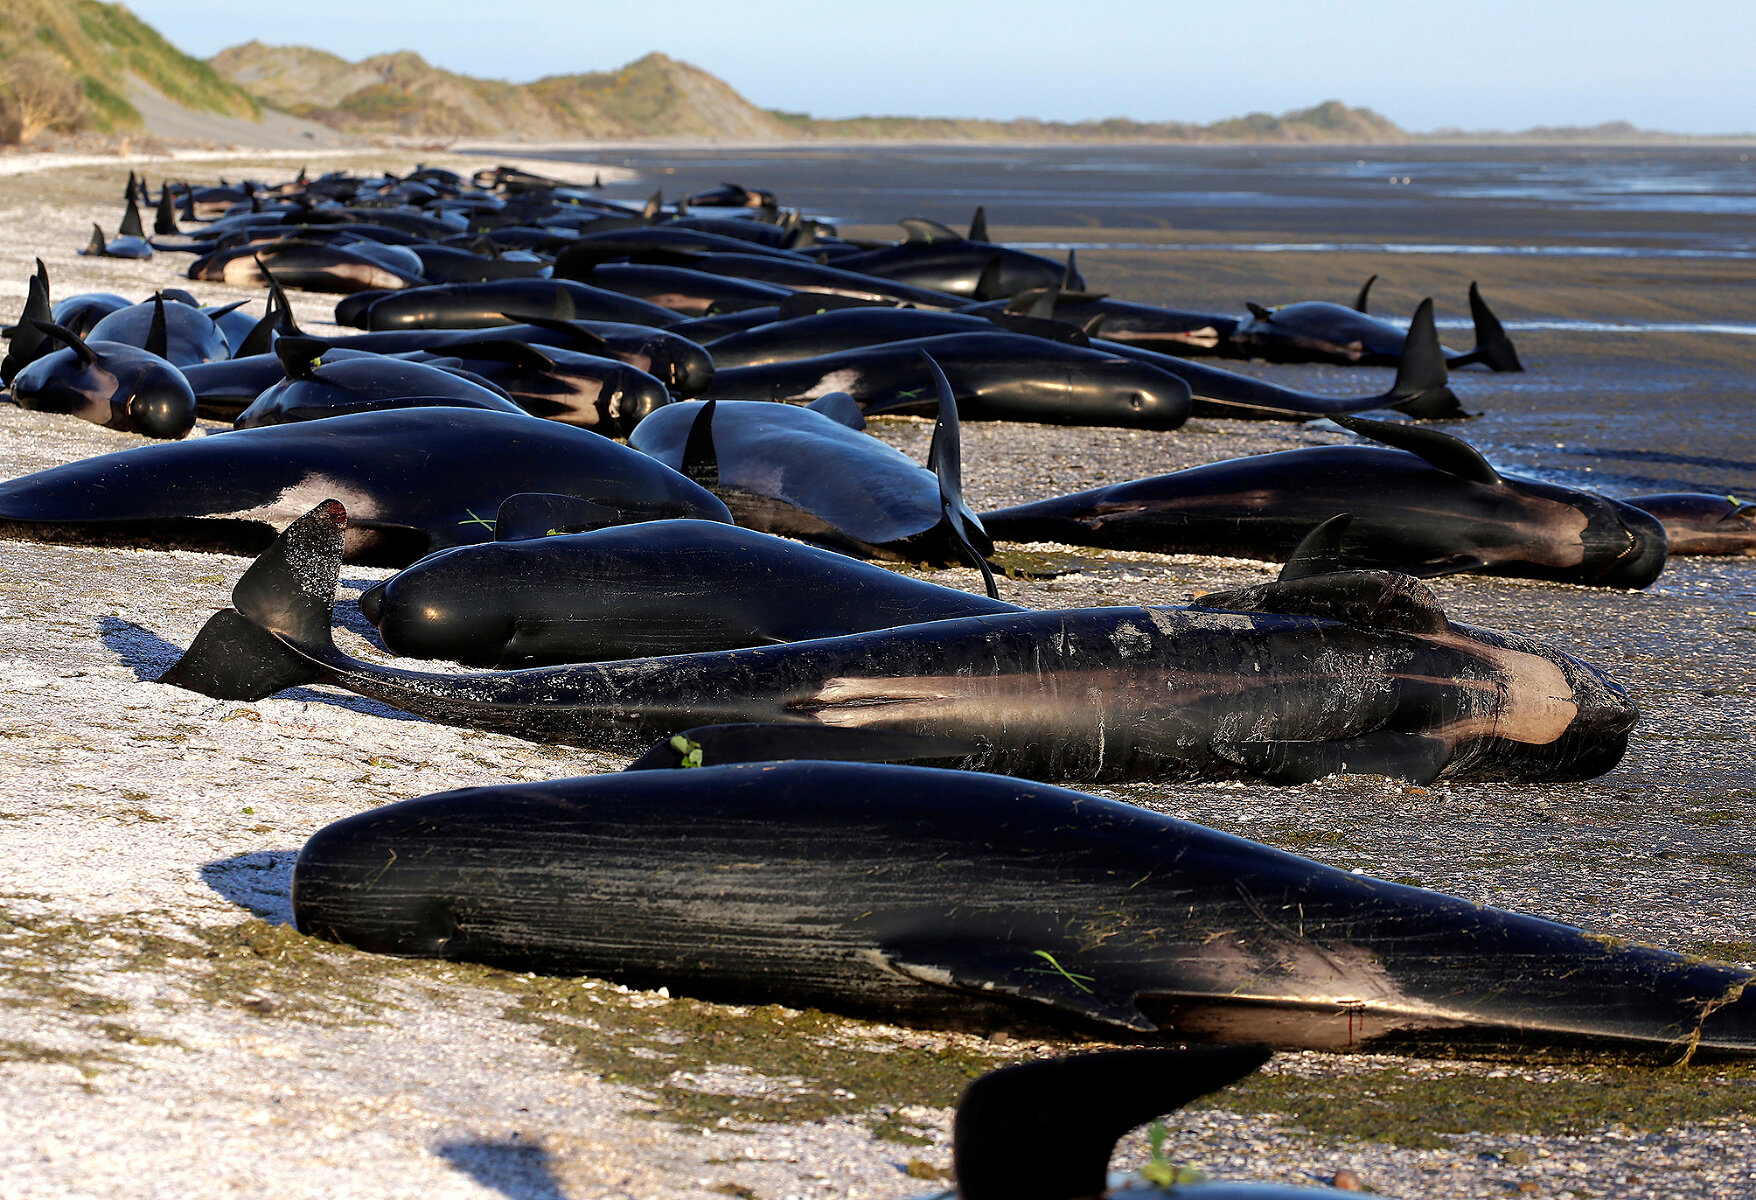 <p>Глава проекта &laquo;Иона&raquo; Дарен Гровер рассказал, что около 75% стаи из 416 китов, которые попали на мель этой ночью, уже умерли.&nbsp;</p>

<p><br />
Гровер&nbsp;отмечает, что это одно из самых крупных происшествий с гибелью китообразных в Новой Зеландии, где киты и дельфины часто выбрасываются на берег.&nbsp;</p>